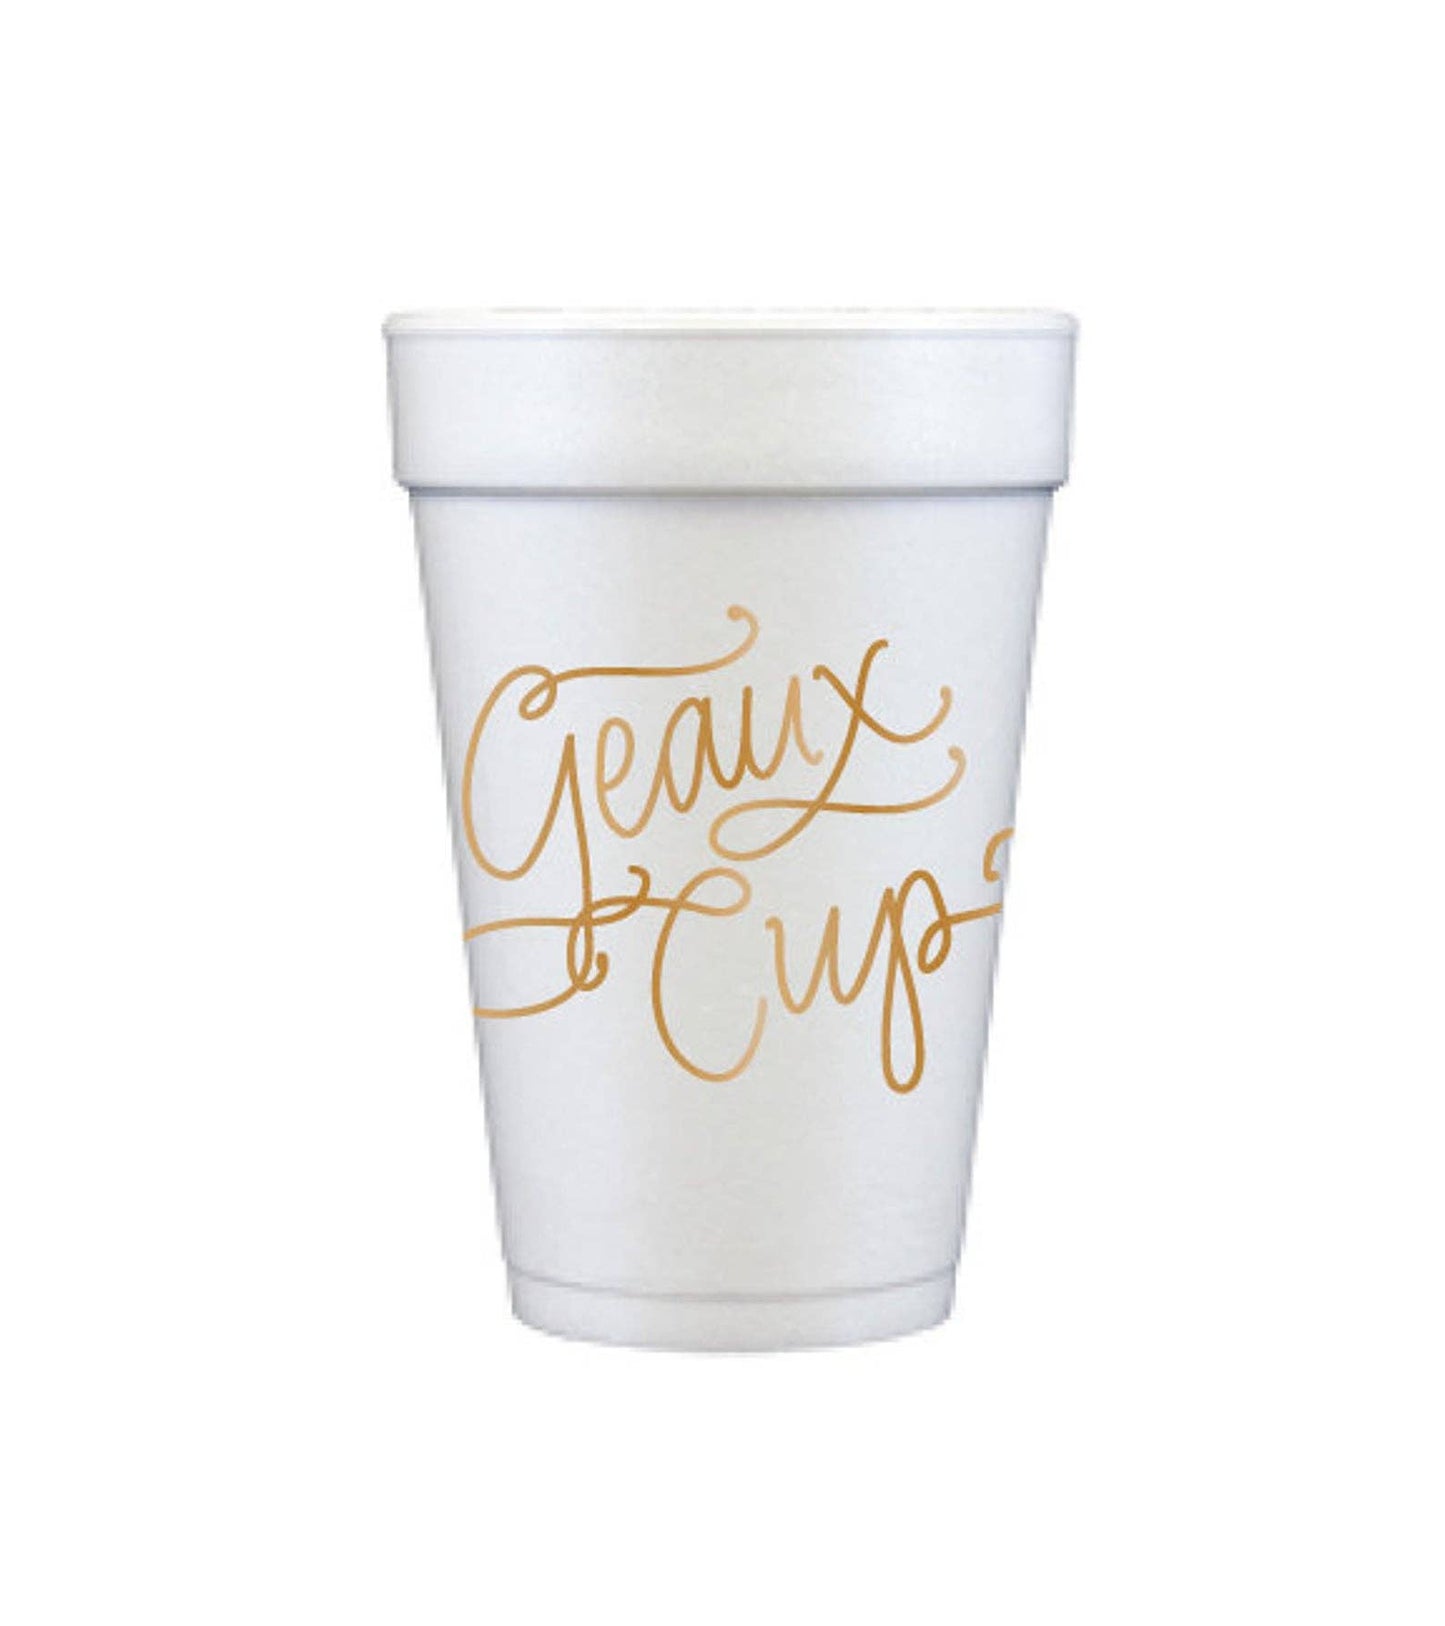 Foam Cups - Geaux Cup